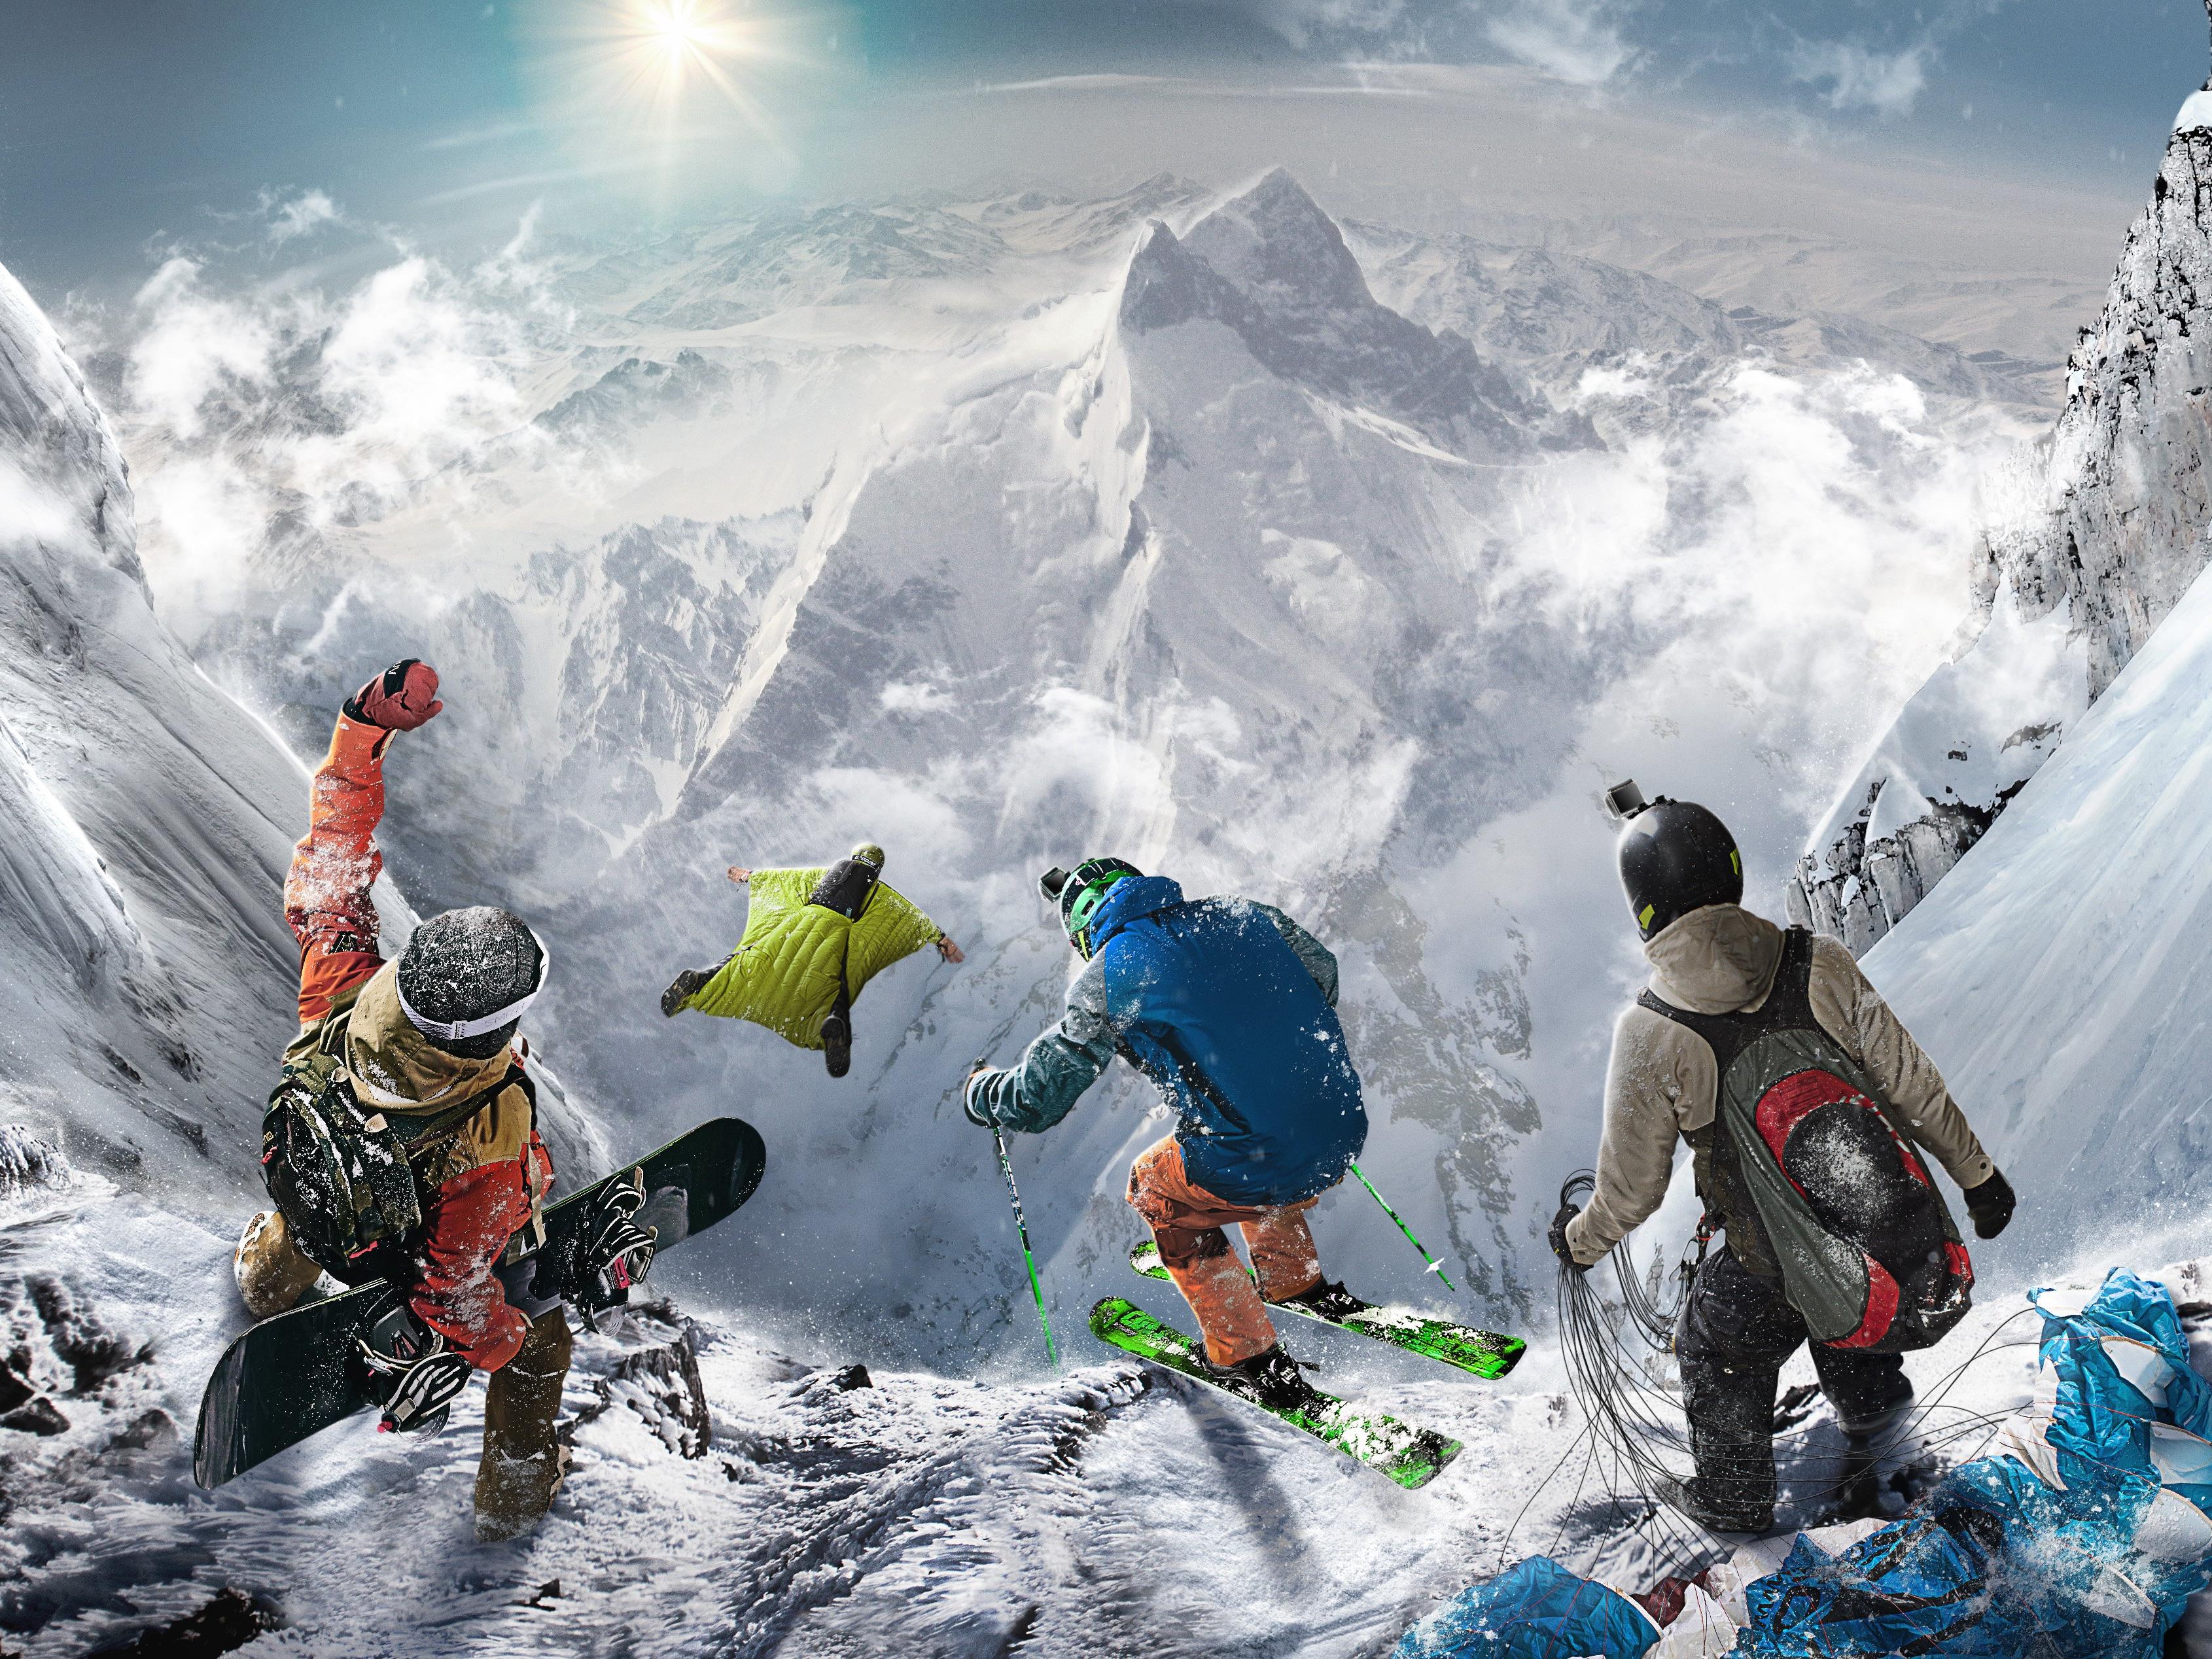 Wintersport, virtuell: "Steep" wird einer der großen Videospieltitel zum Jahresende